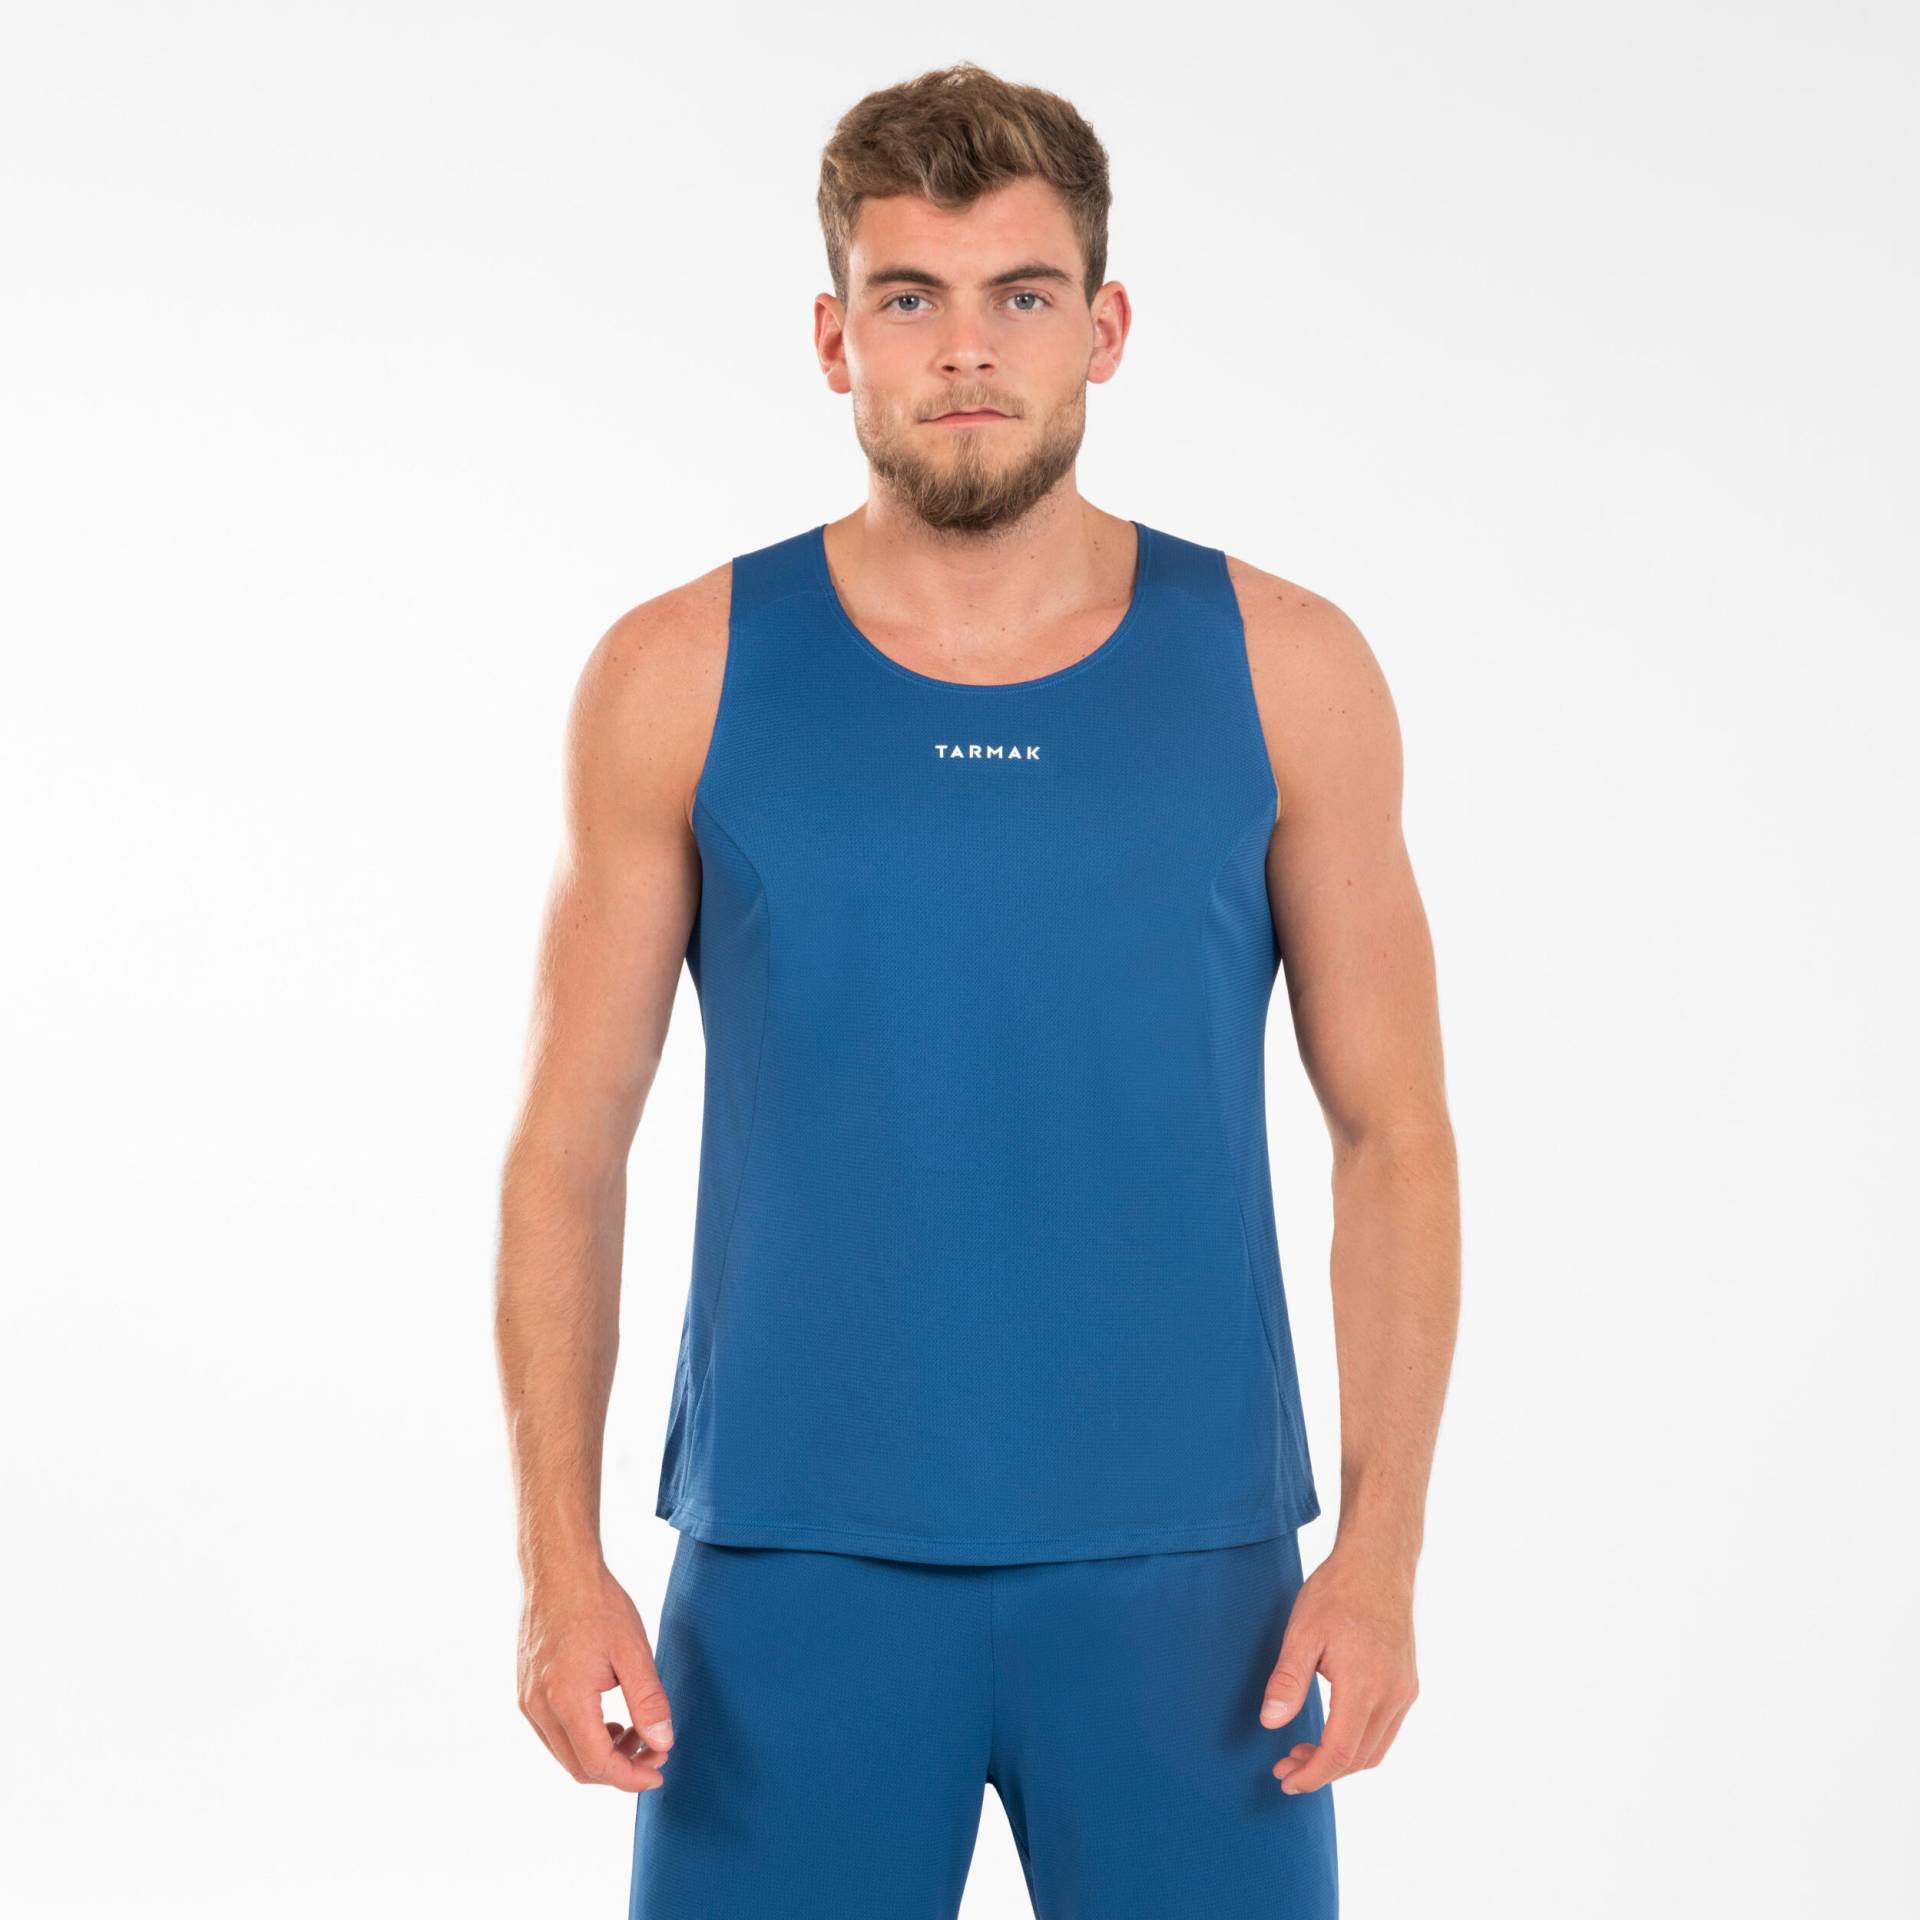 Damen/Herren Basketball Trikot ärmellos ‒ T100 marineblau von TARMAK